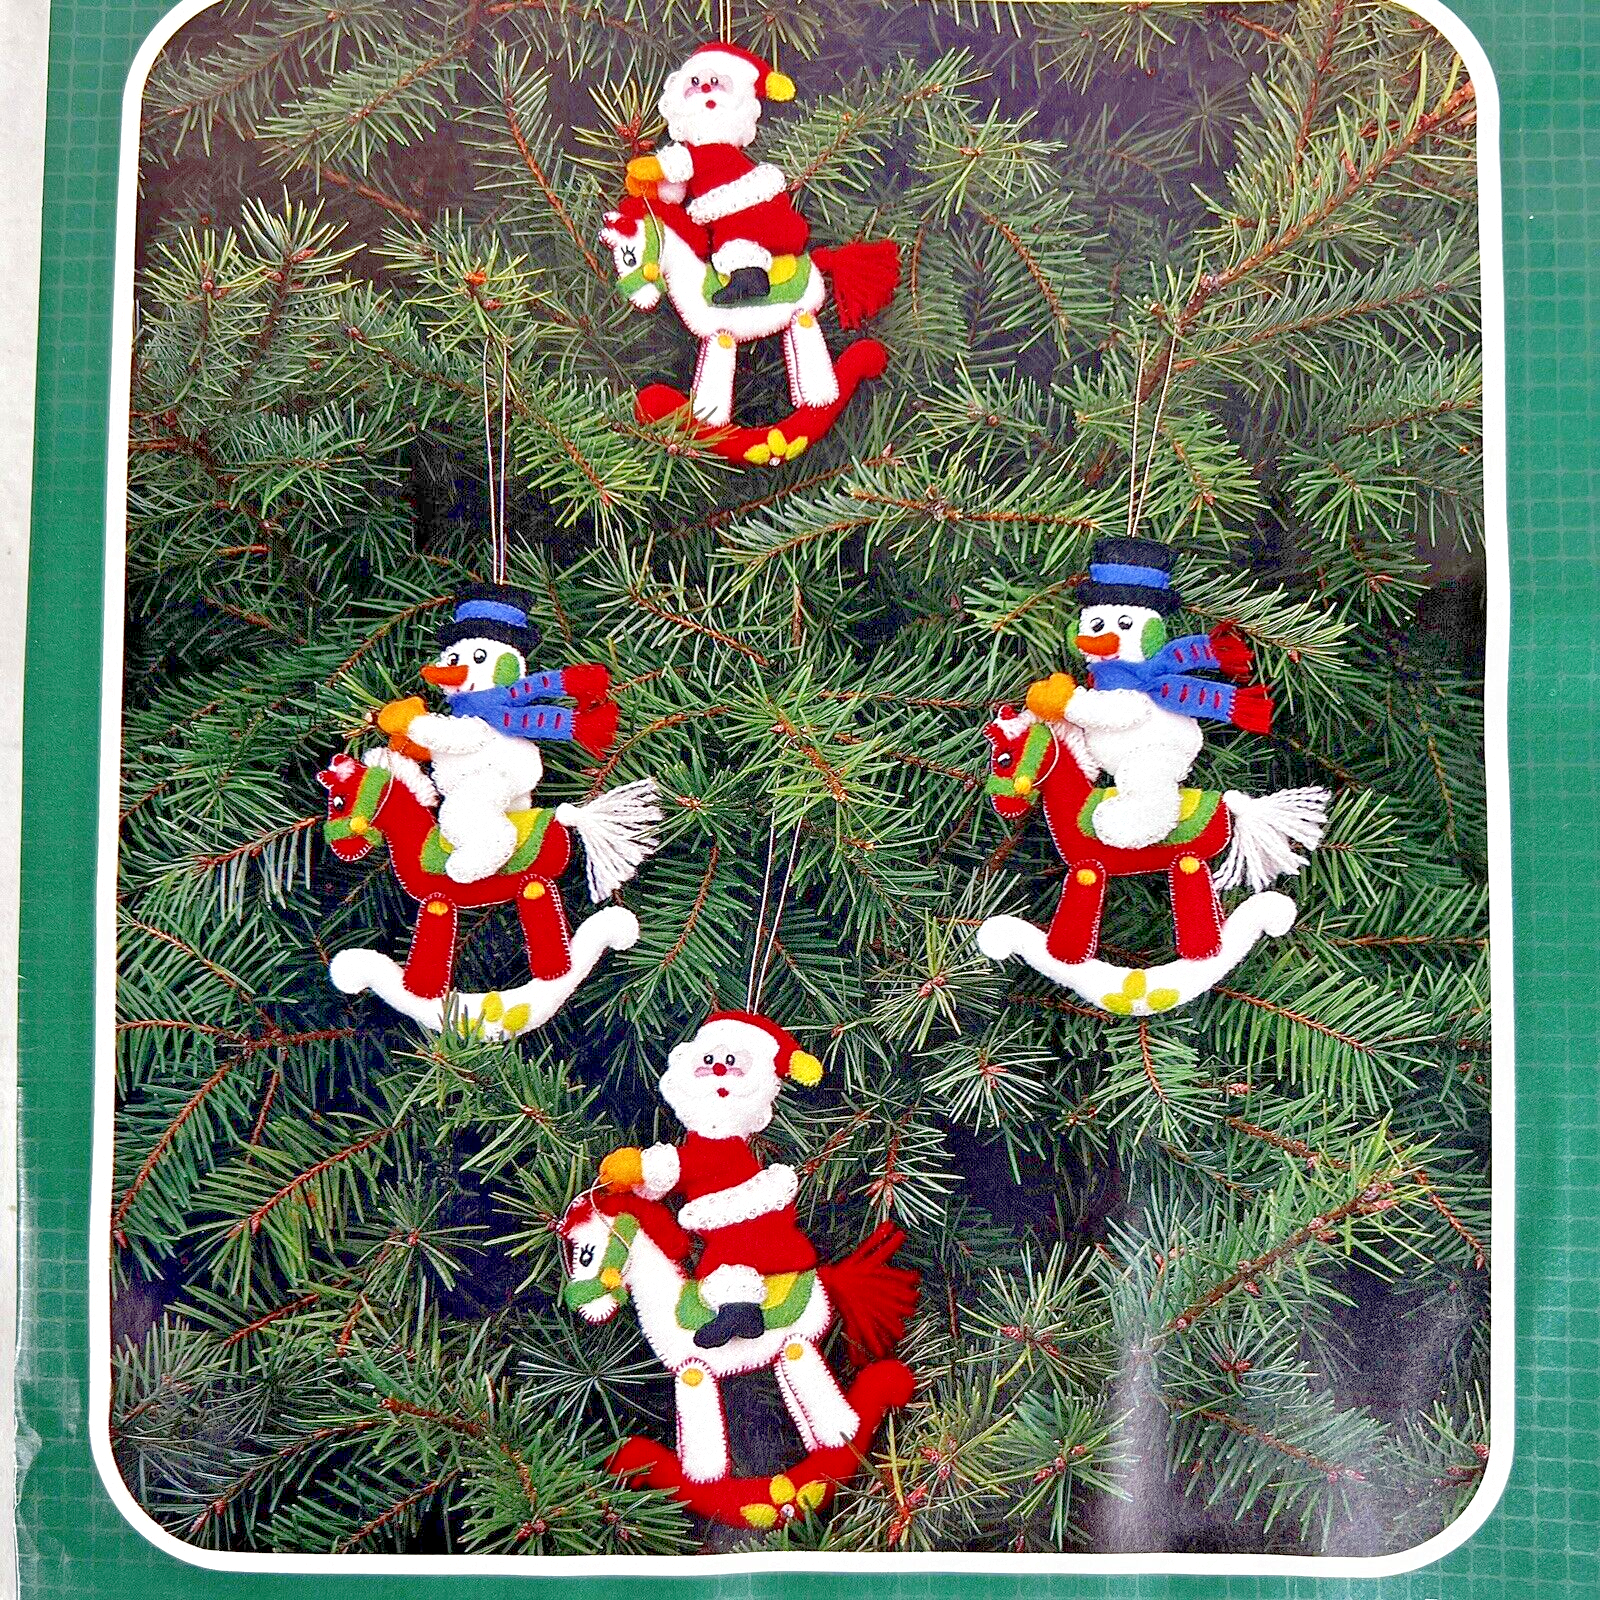 Bucilla Felt Ornaments Applique Kit Set of 6 - Nordic Christmas